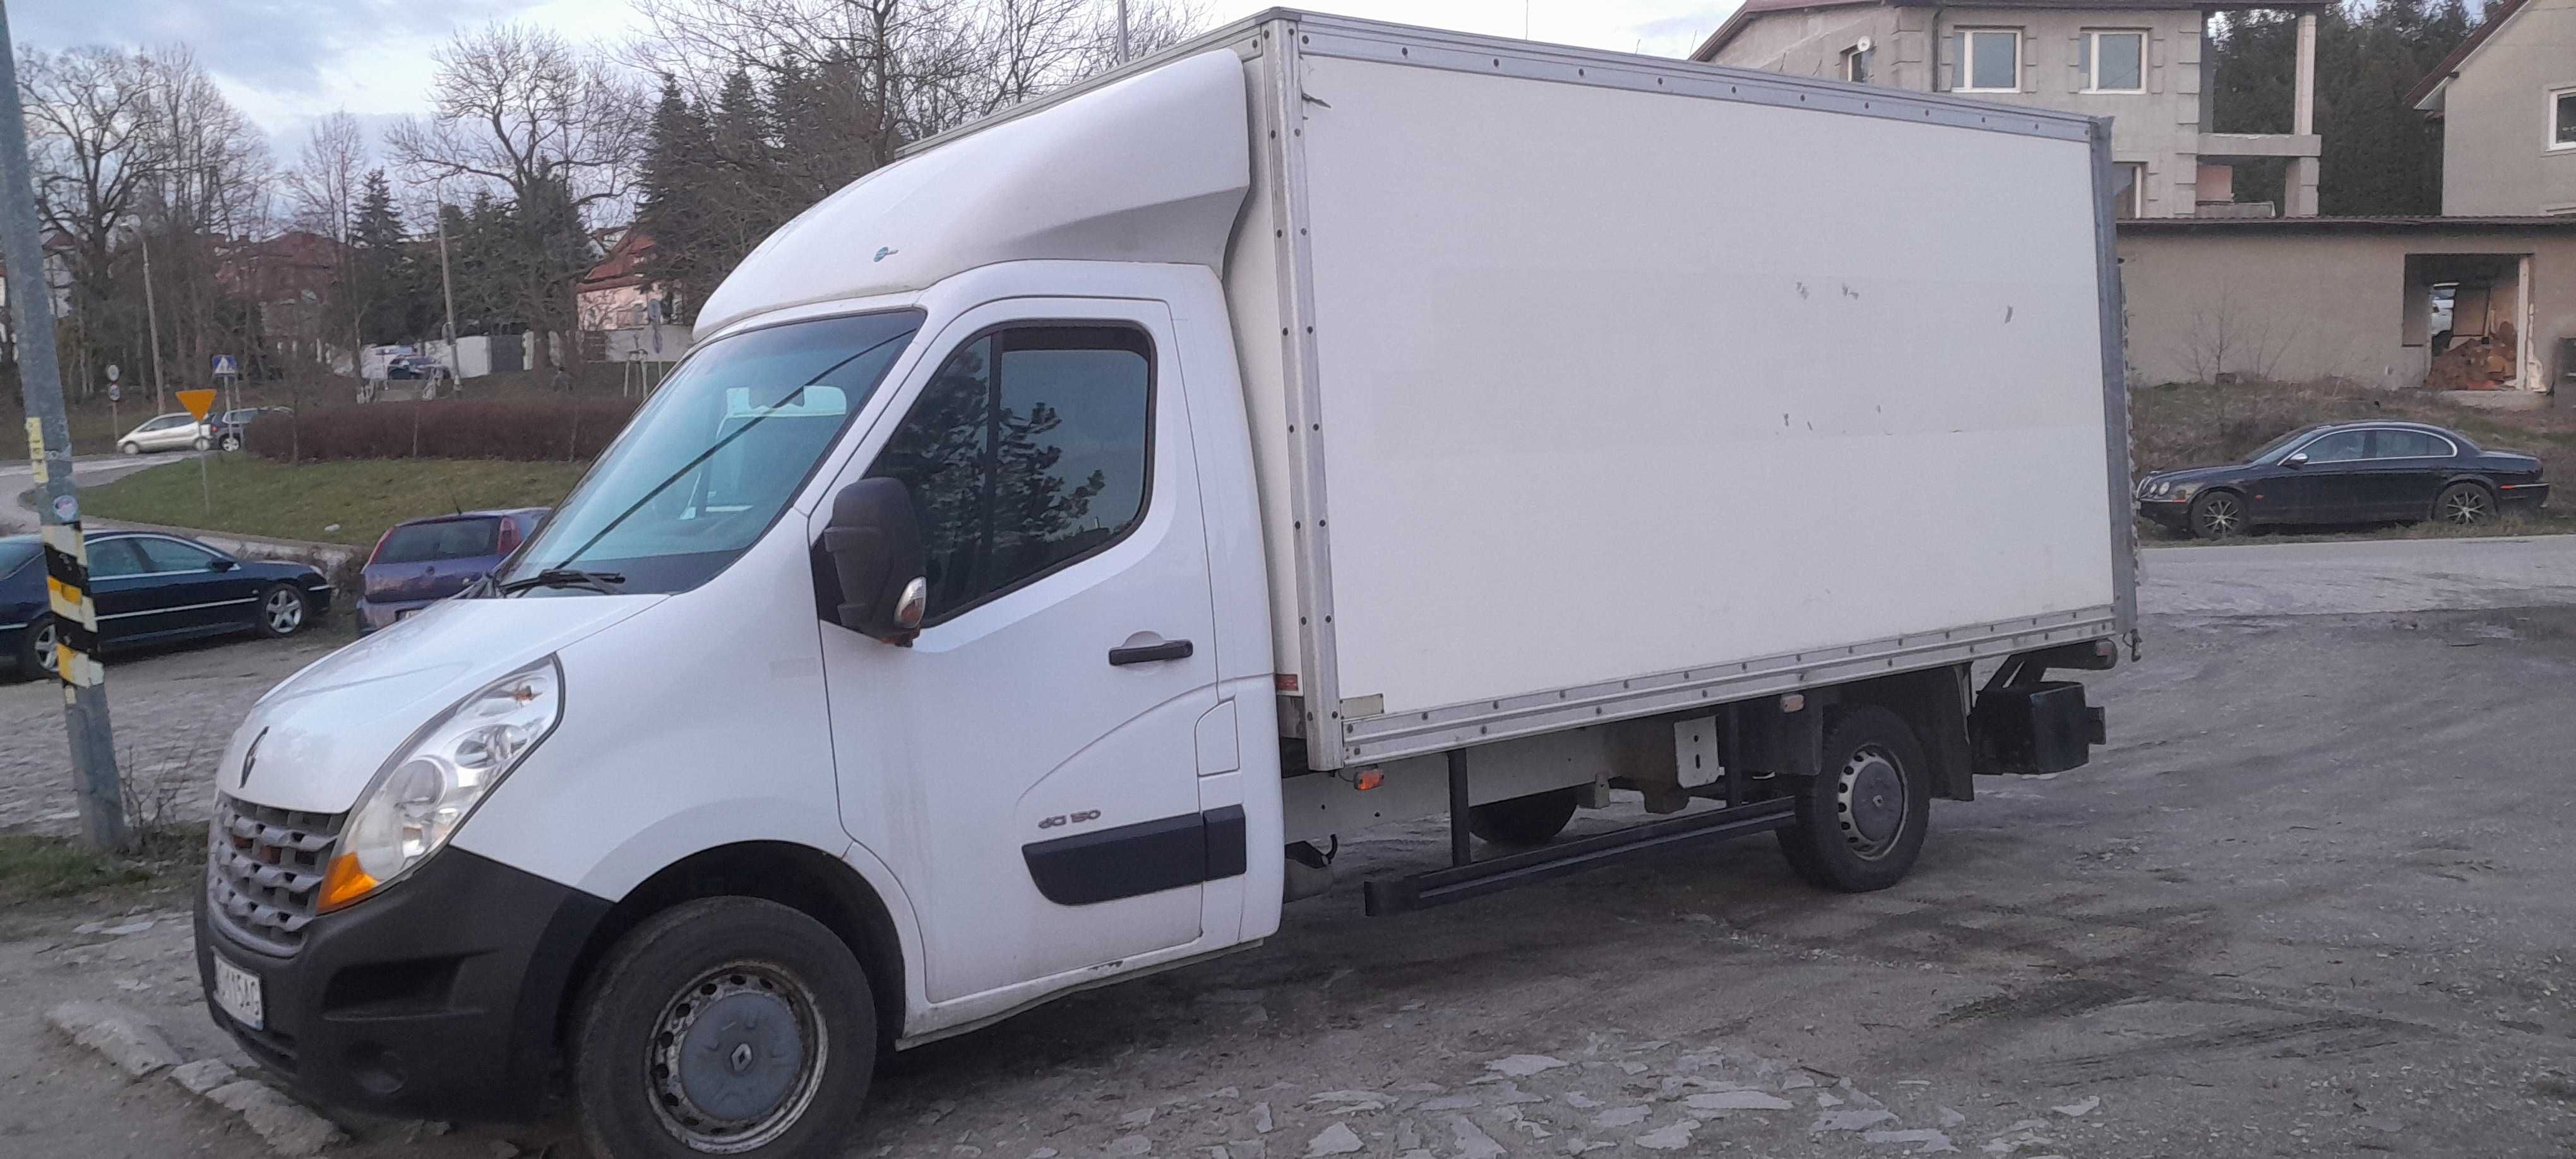 Renault Master kontener winda DHolandia750 kg